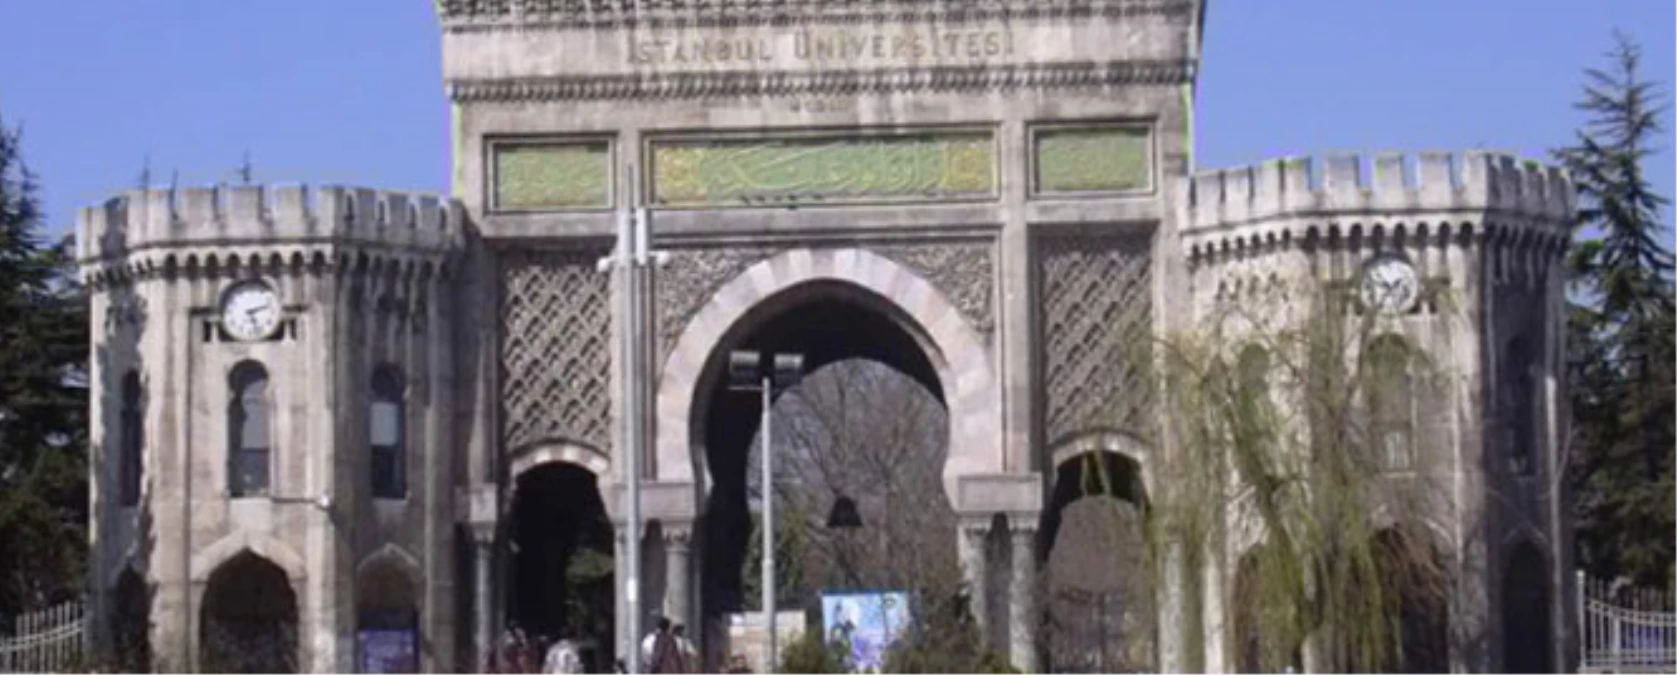 İstanbul Üniversitesi Depreme Hazırlanıyor